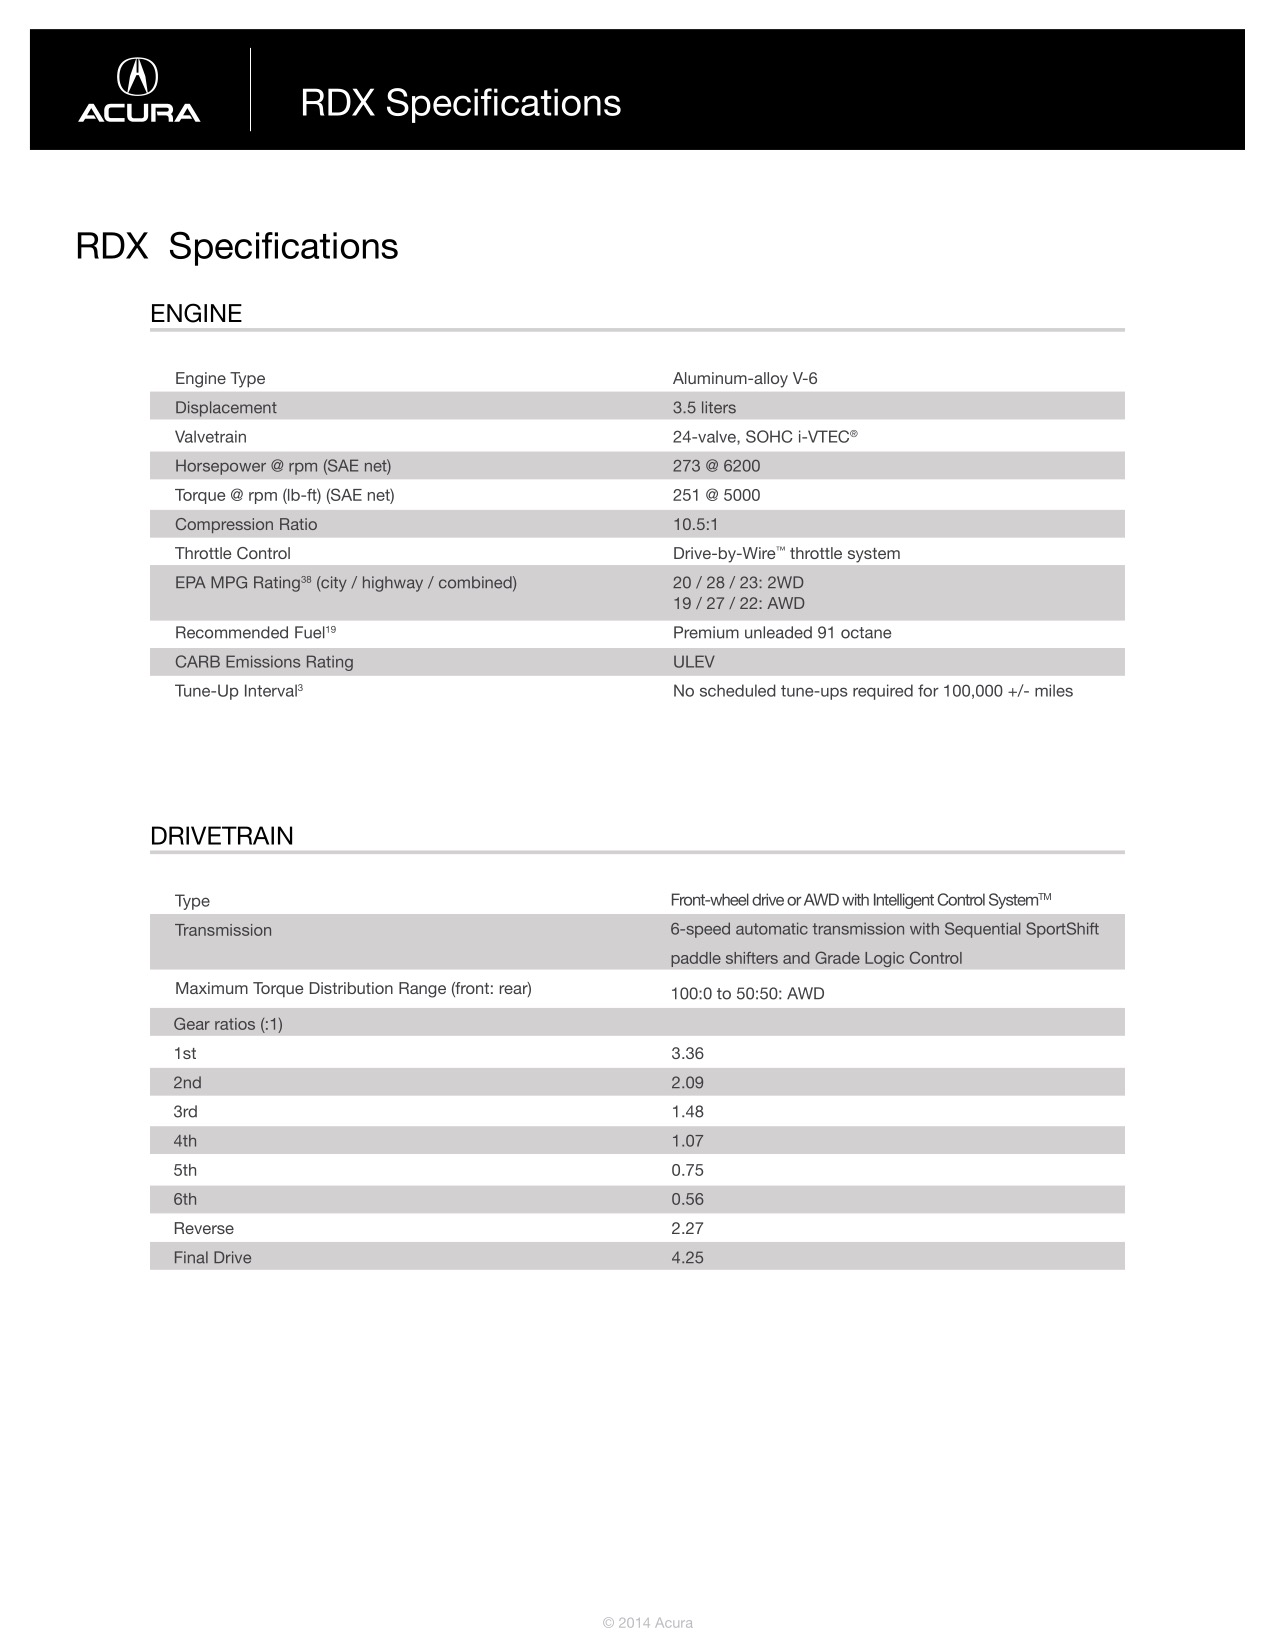 2015 Acura RDX Brochure Page 32